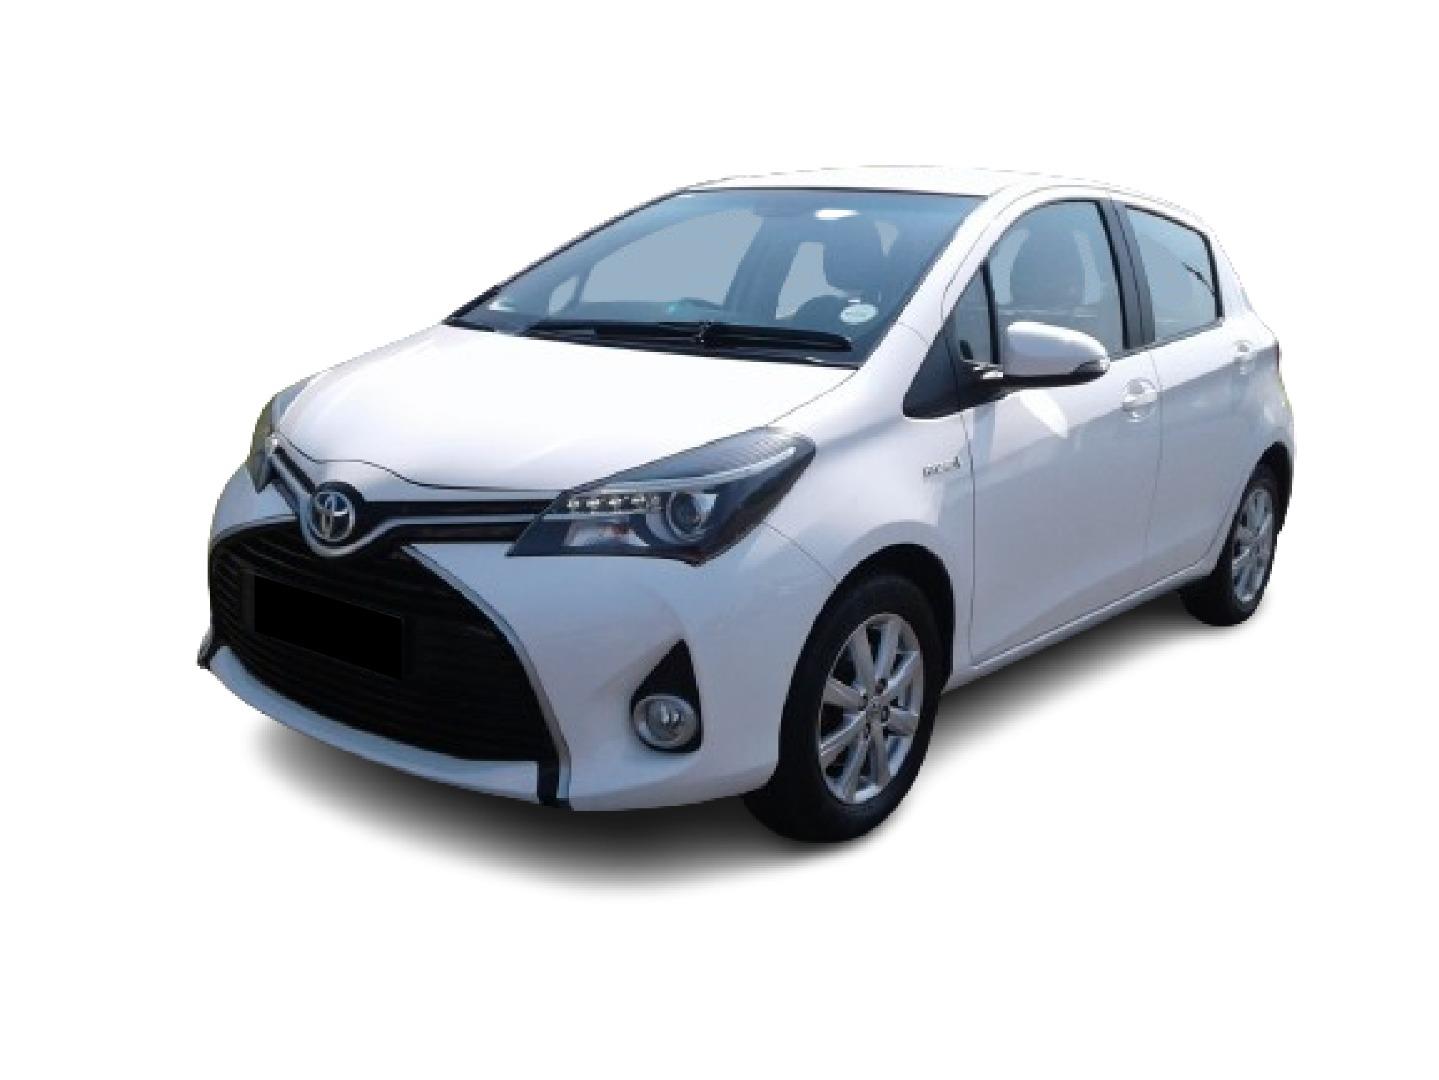 2015 Toyota Yaris 1.5 Hybrid 5-Door Cvt for sale - 343355